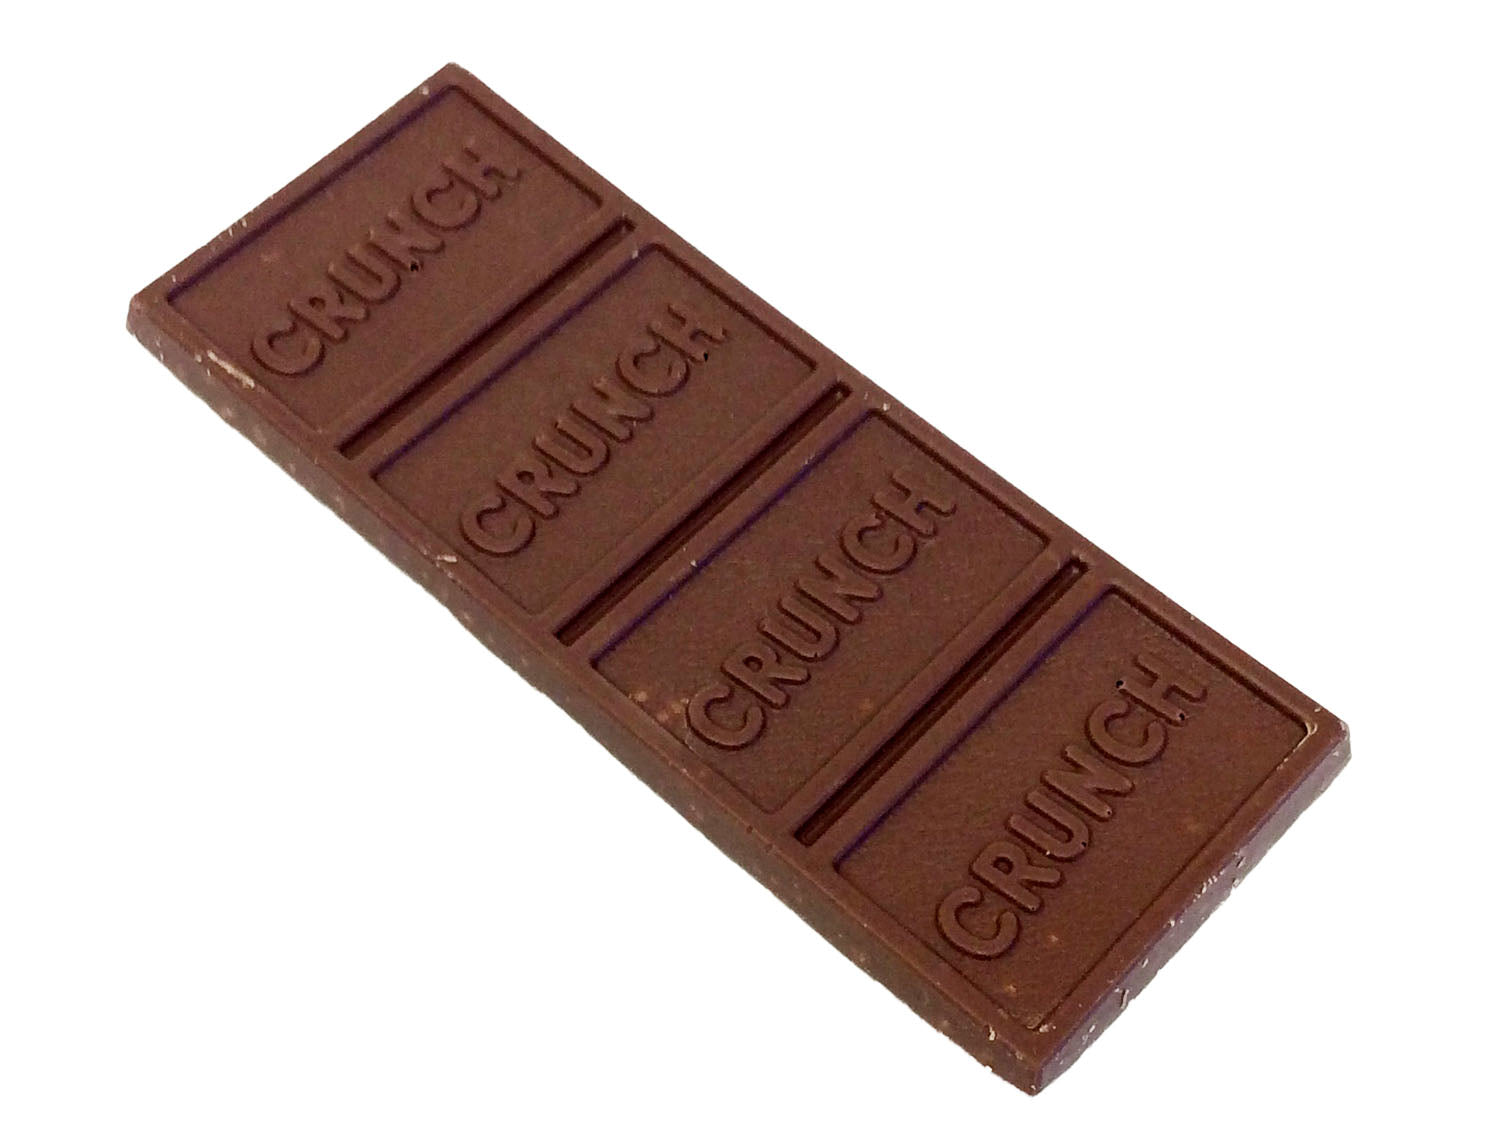 Nestle Crunch - 1.55 oz bar unwrappe